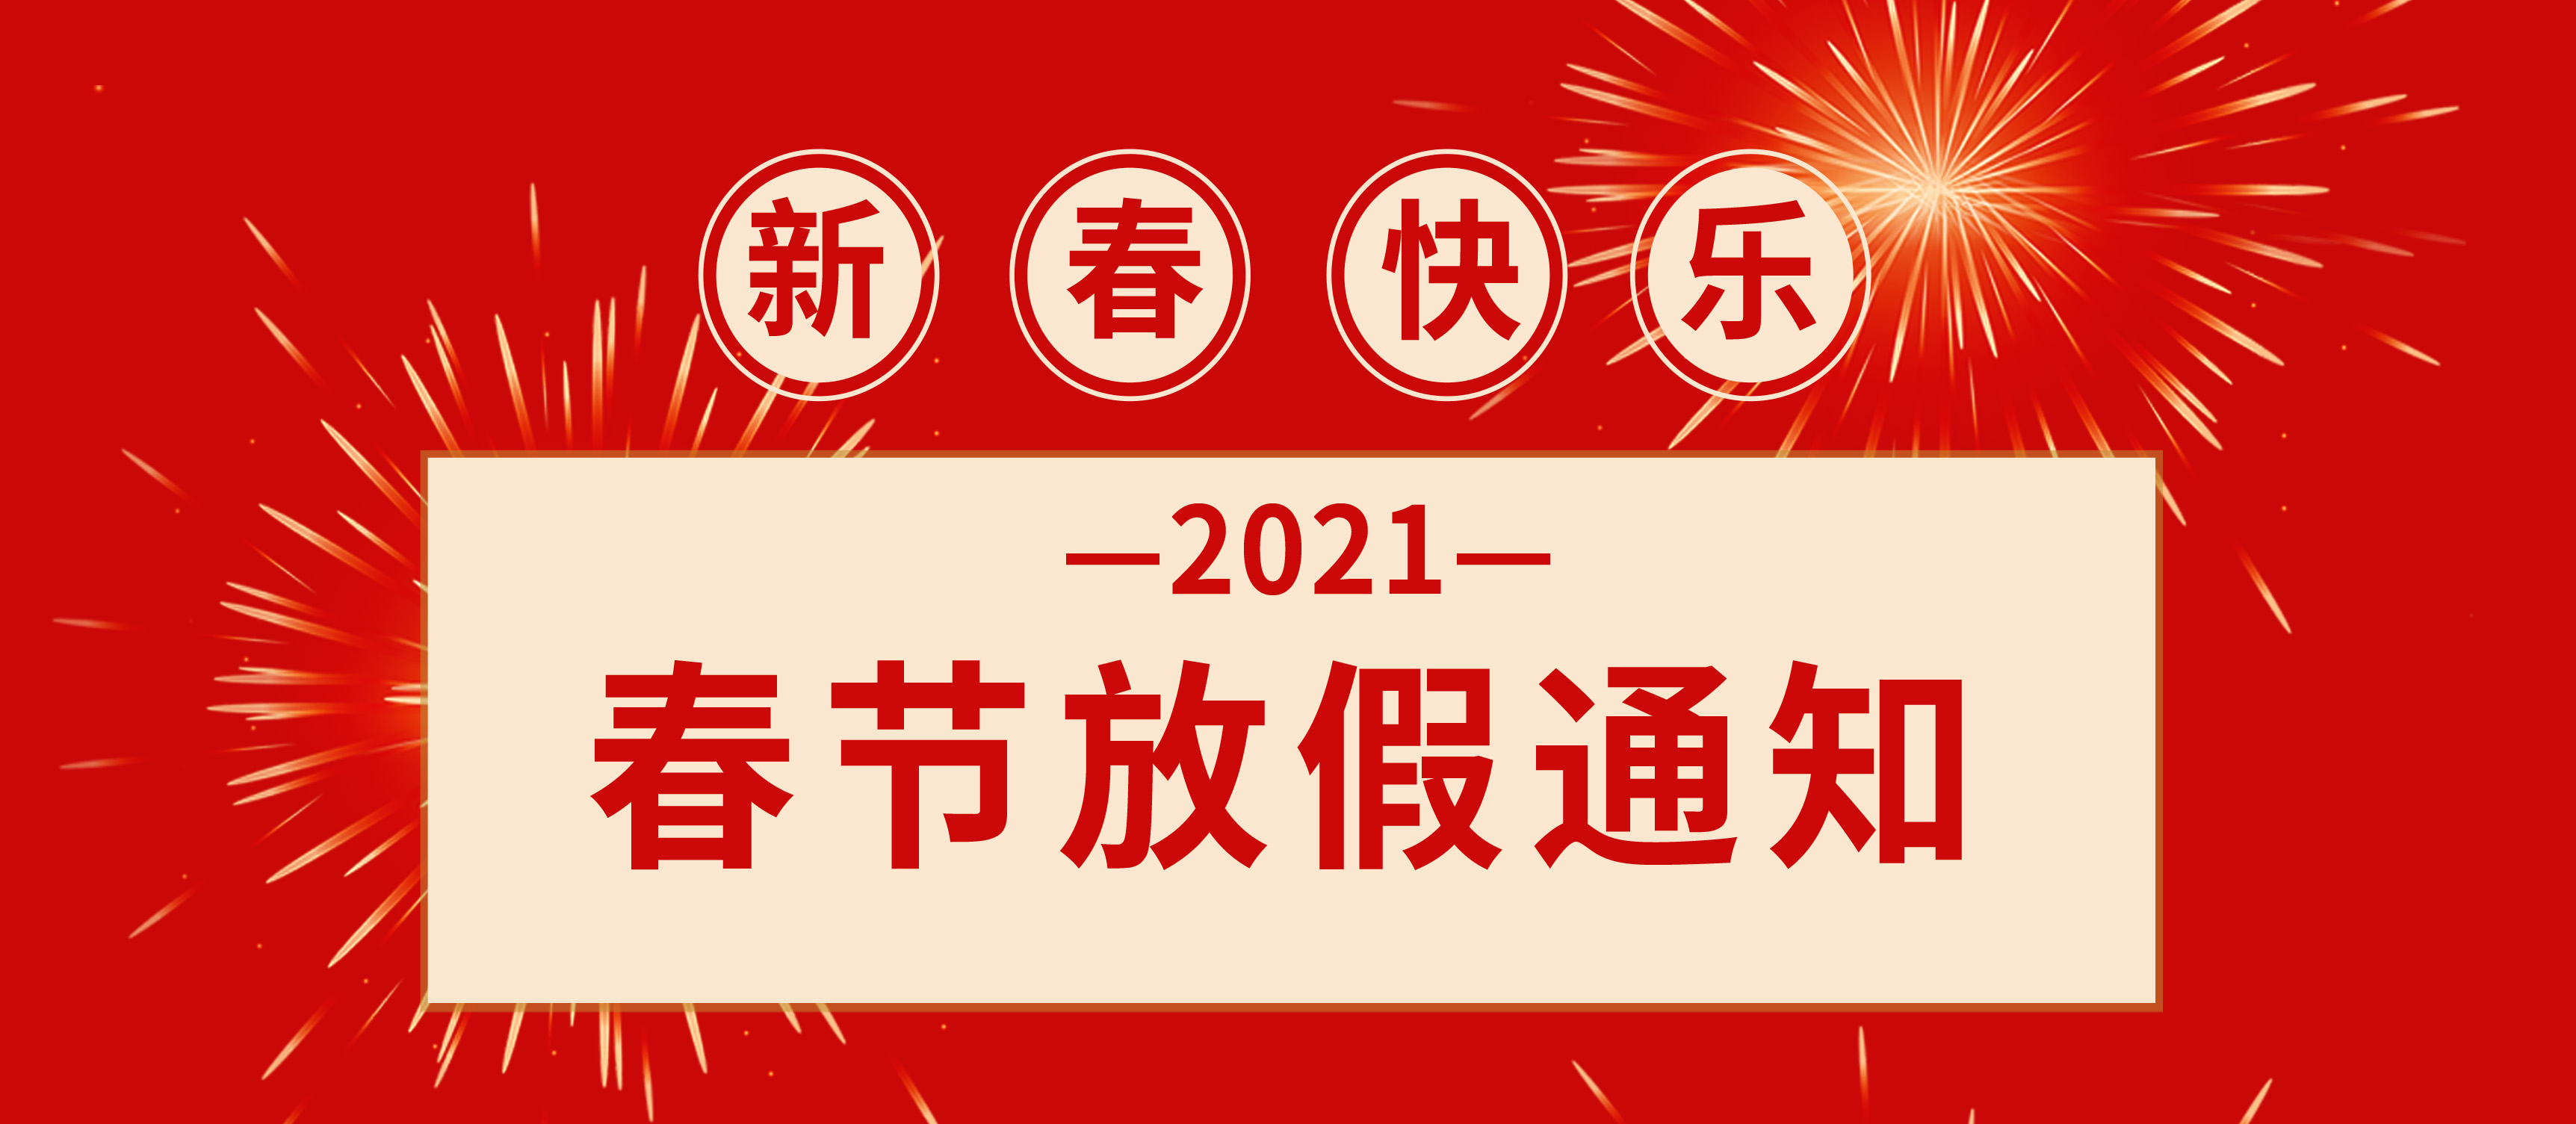 福建上润2021年春节放假时间安排通知